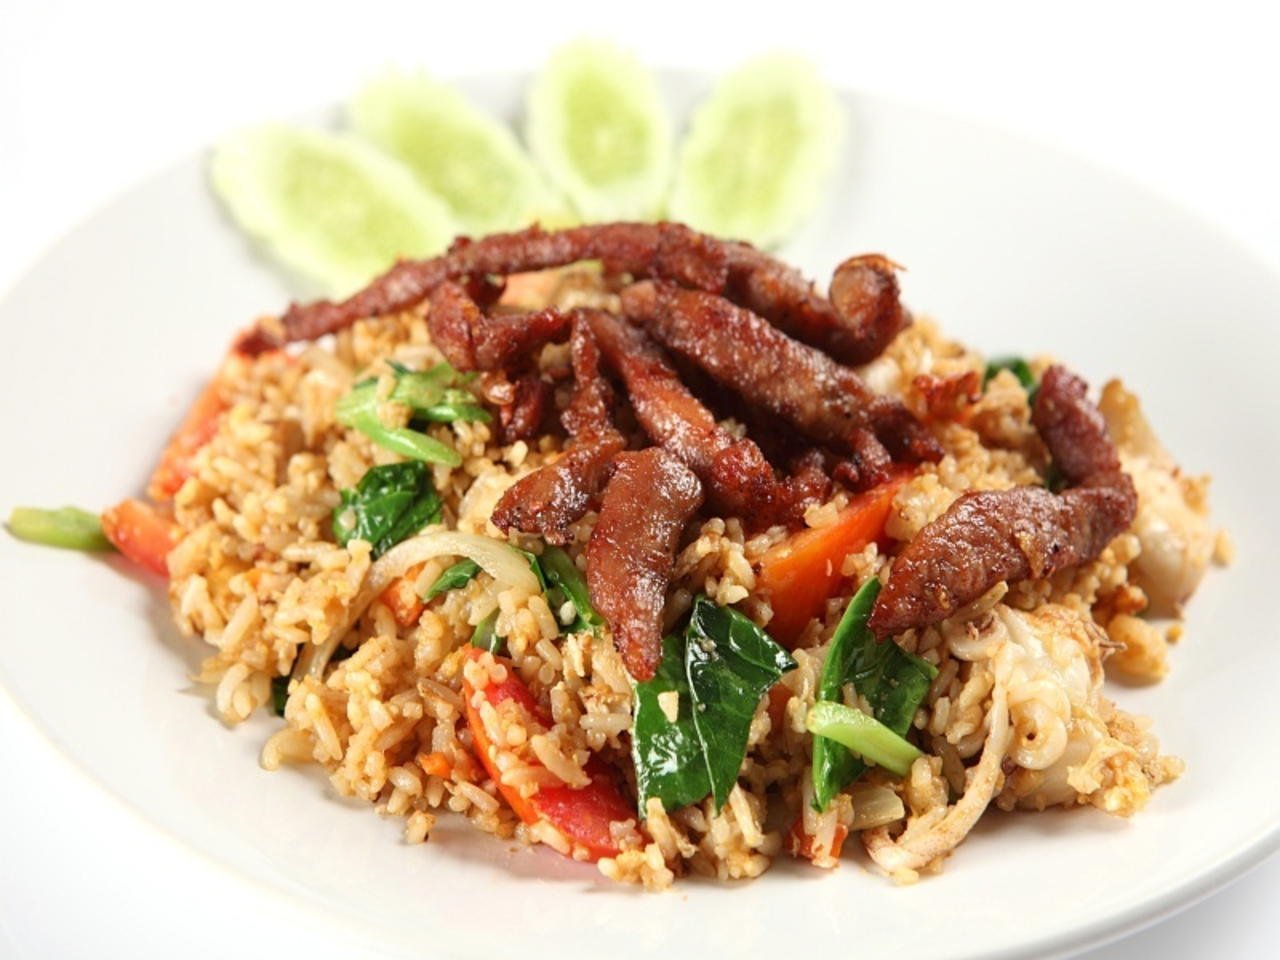 Meat rice. Мясо по тайски с рисом. Тайский рис с мясом. Рис с говядиной и овощами. Свинина с рисом.